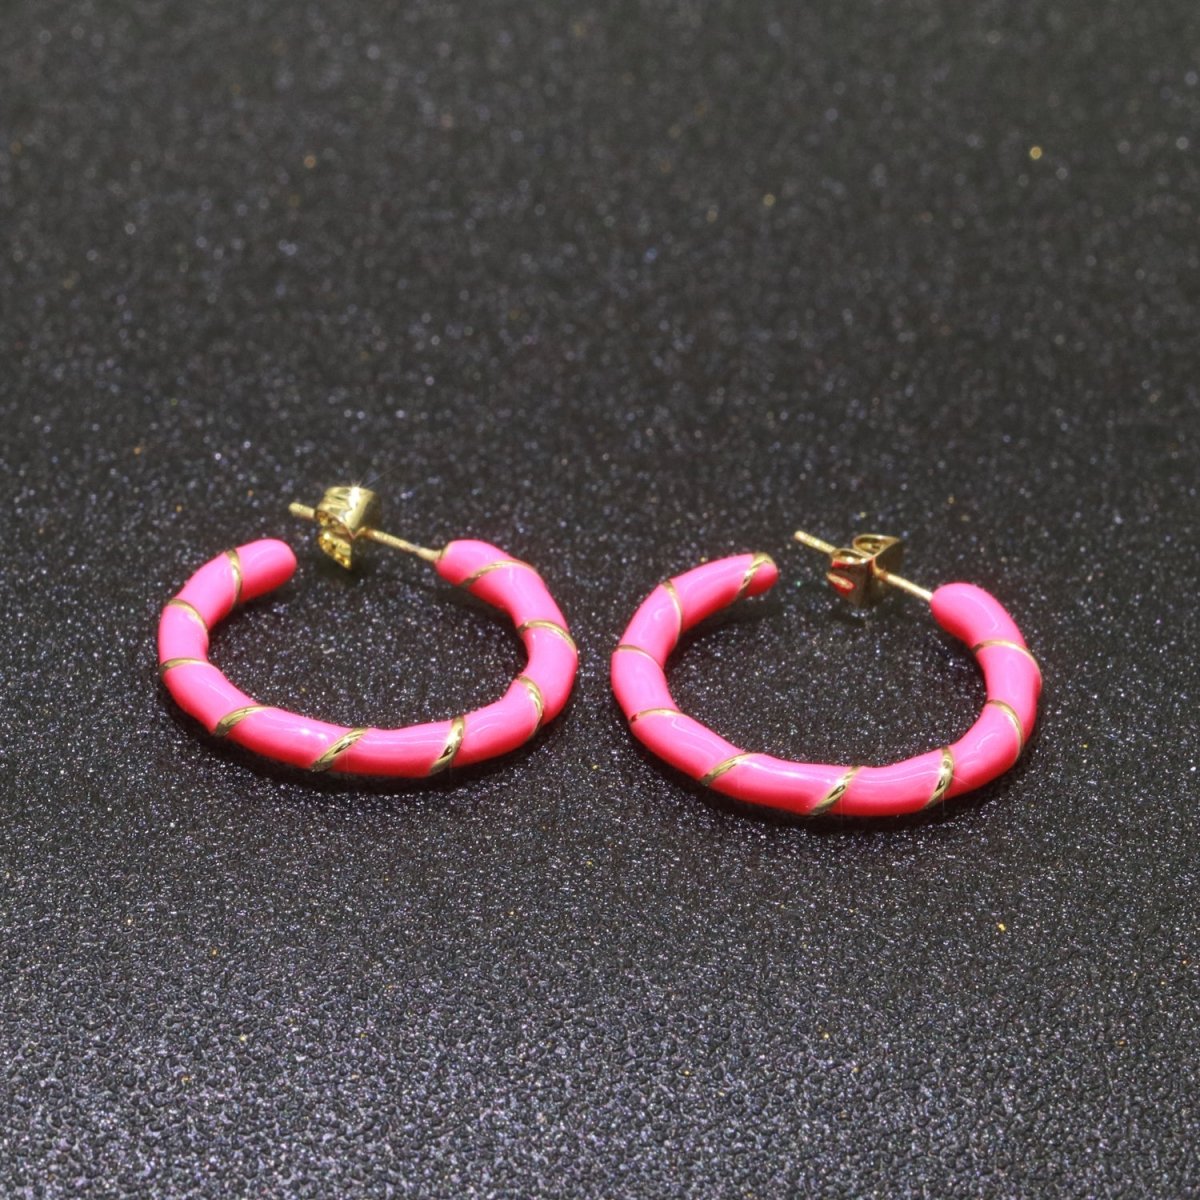 Barbiecore Hot Pink Enamel Hoop Earring with Gold Swirl 26mm Hoop earring Jewelry Gift T-003 - DLUXCA